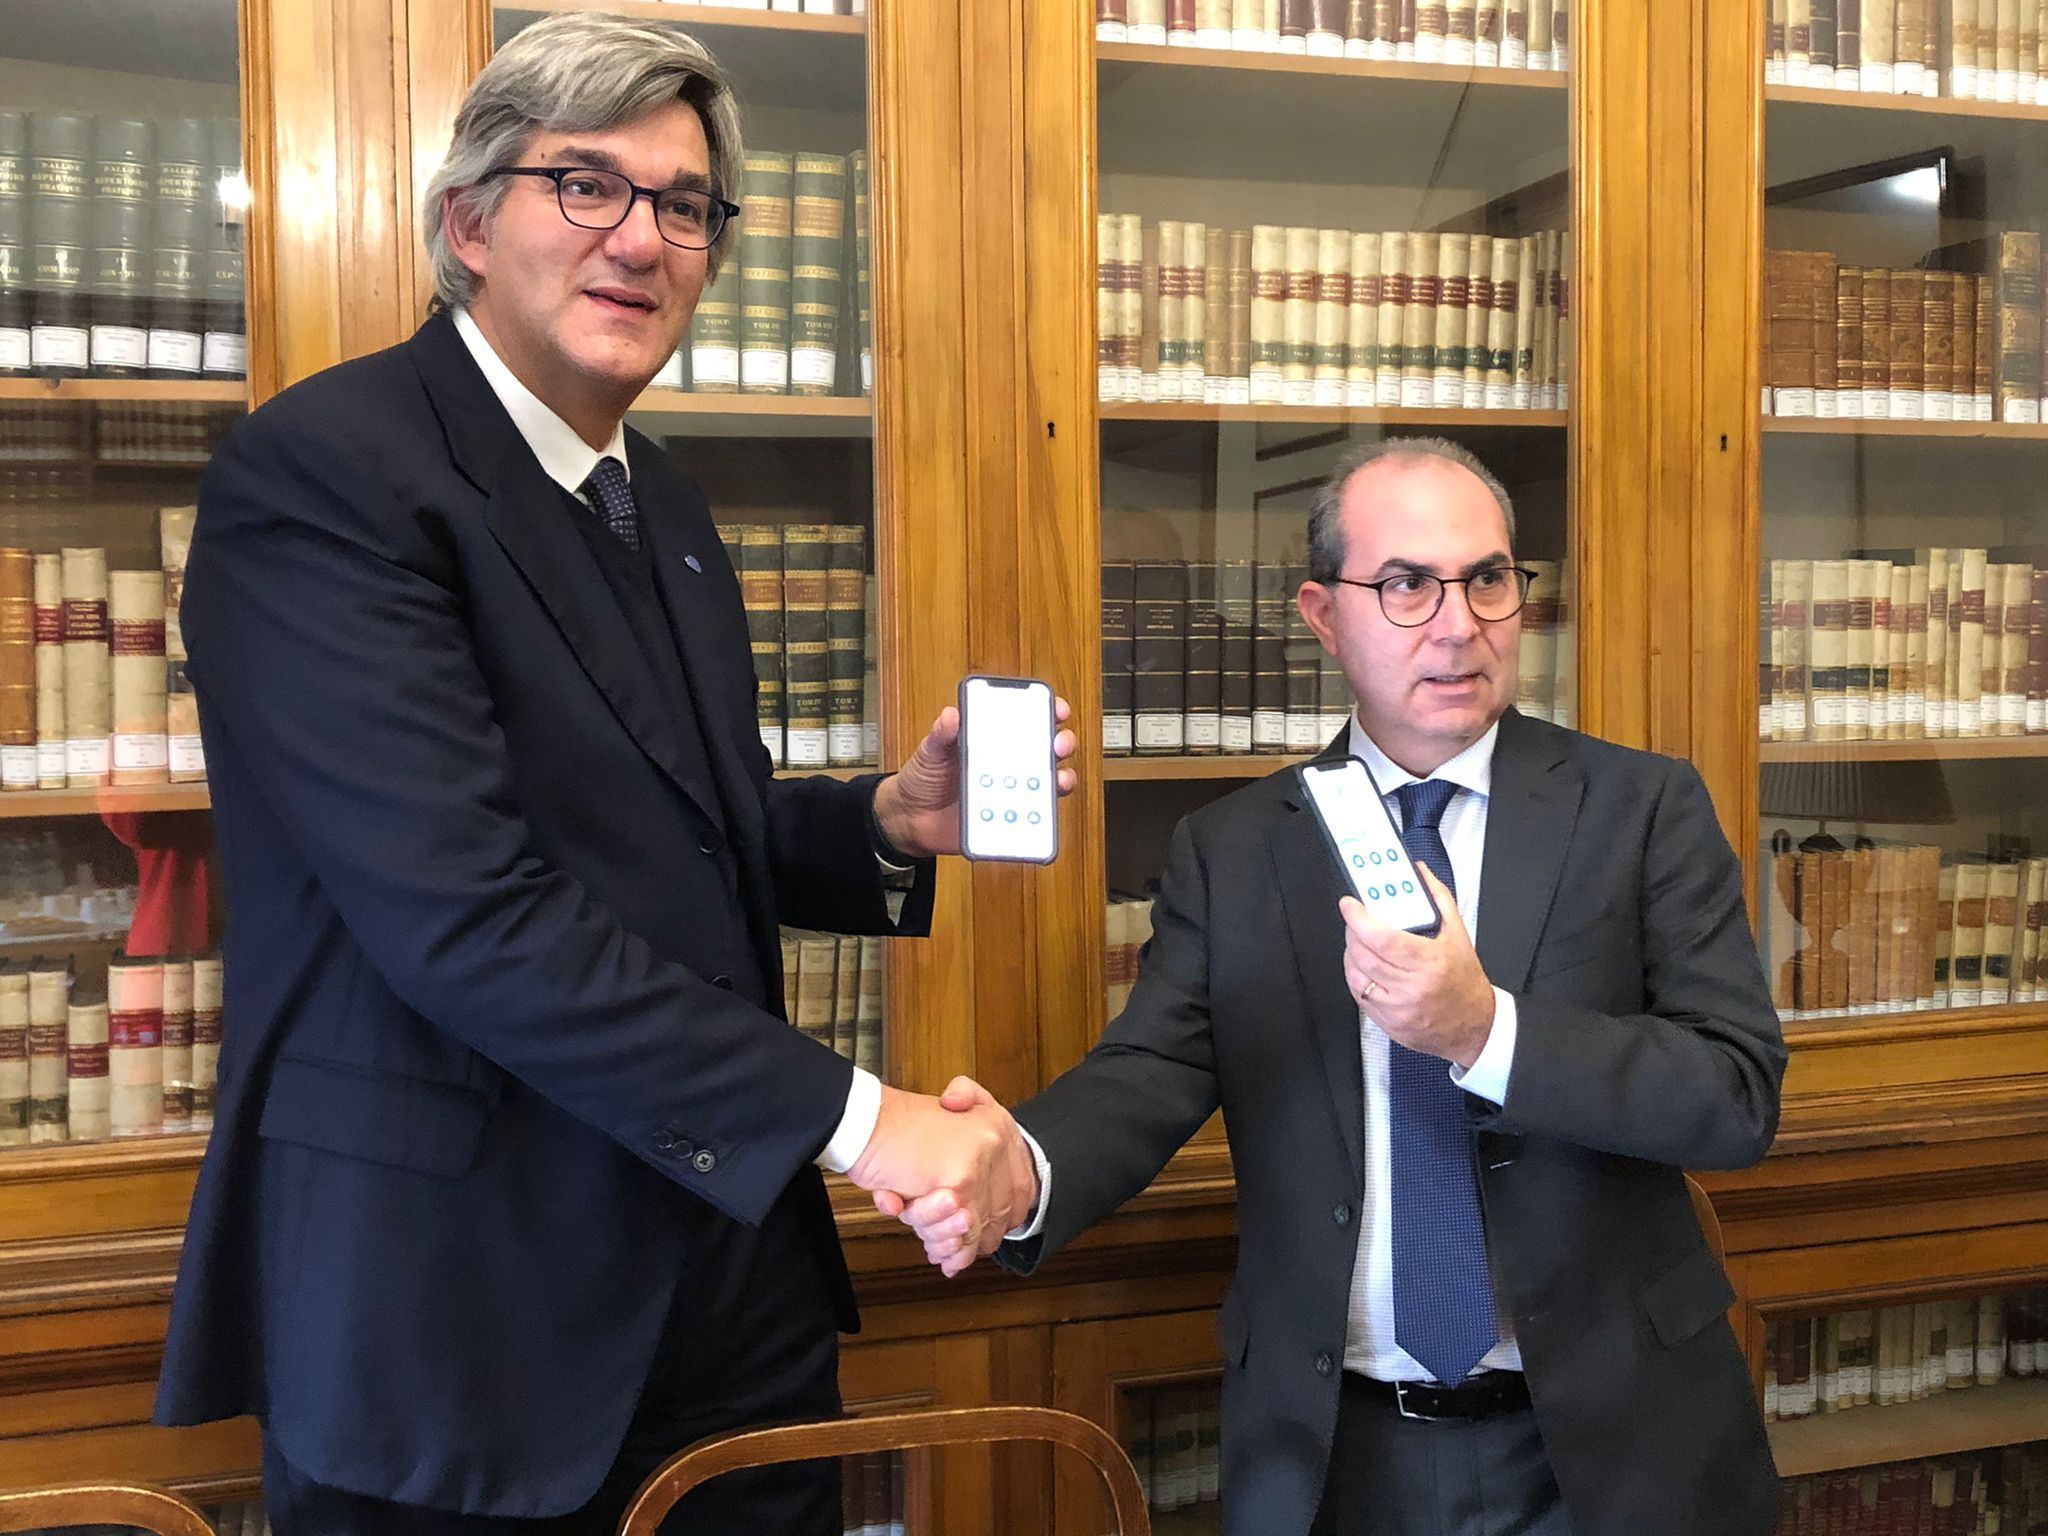 Nasce la prima app ufficiale dell’Ordine degli Avvocati di Roma thumbnail